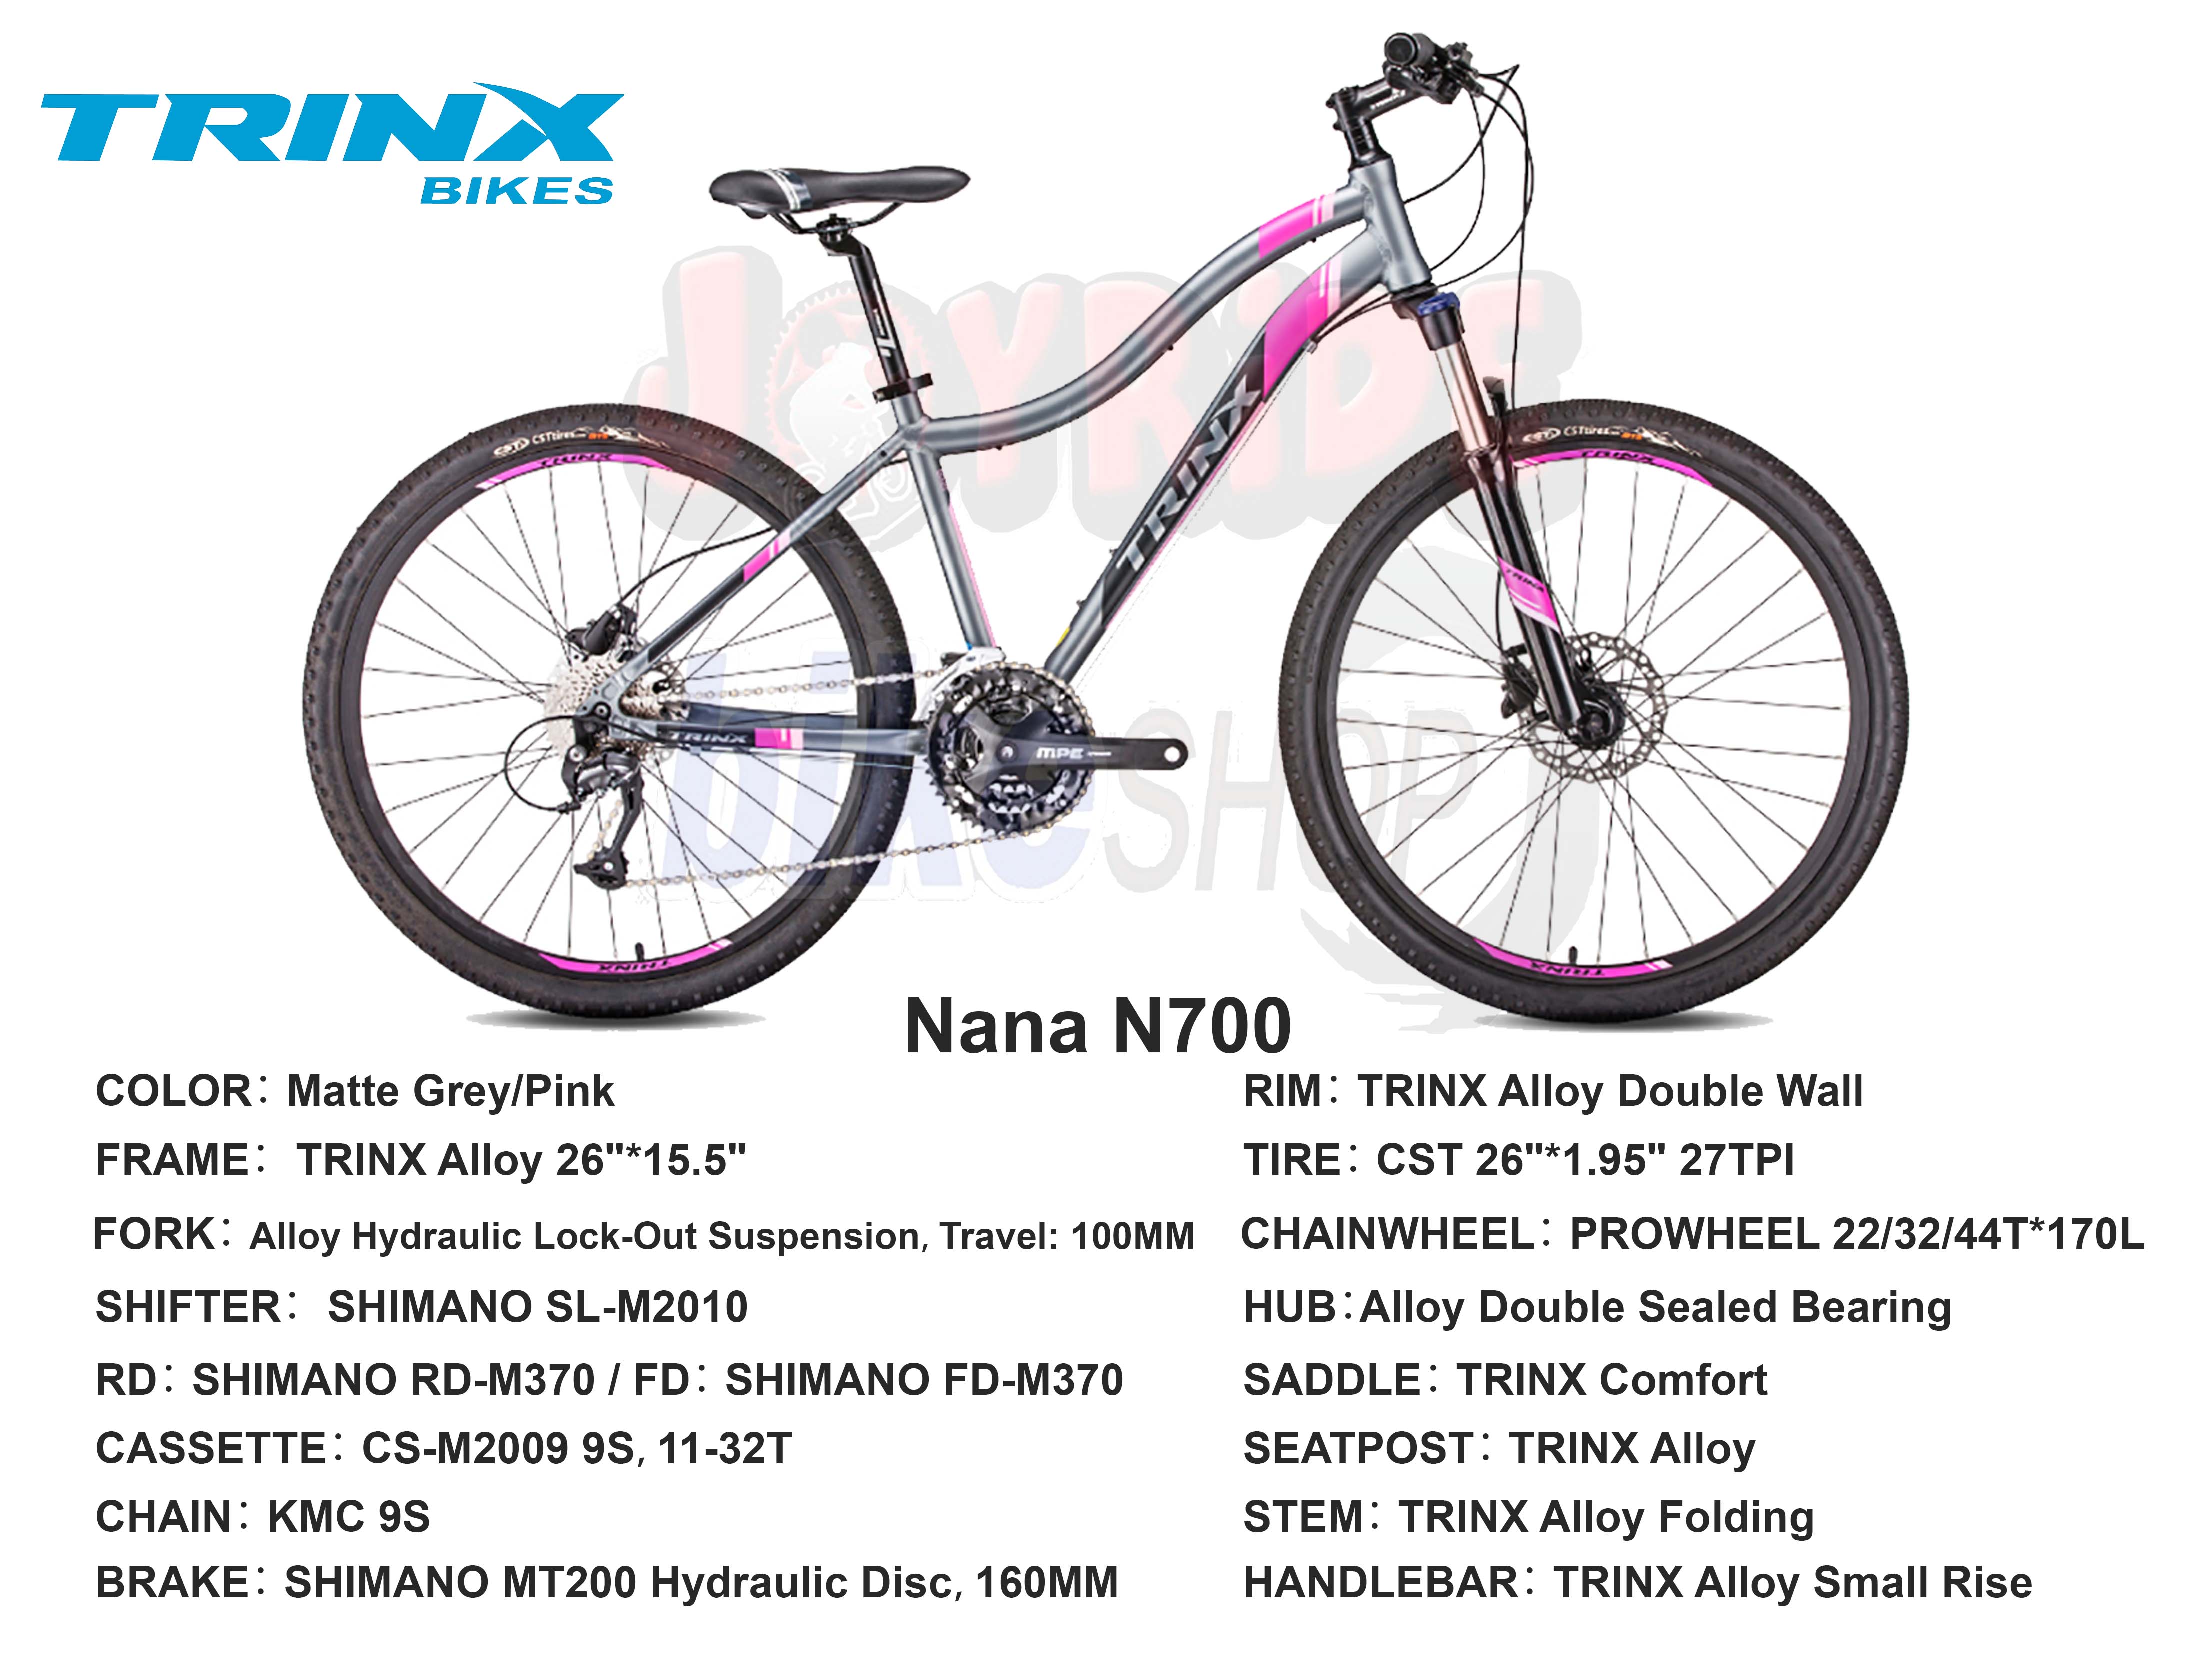 trinx nana n700 price